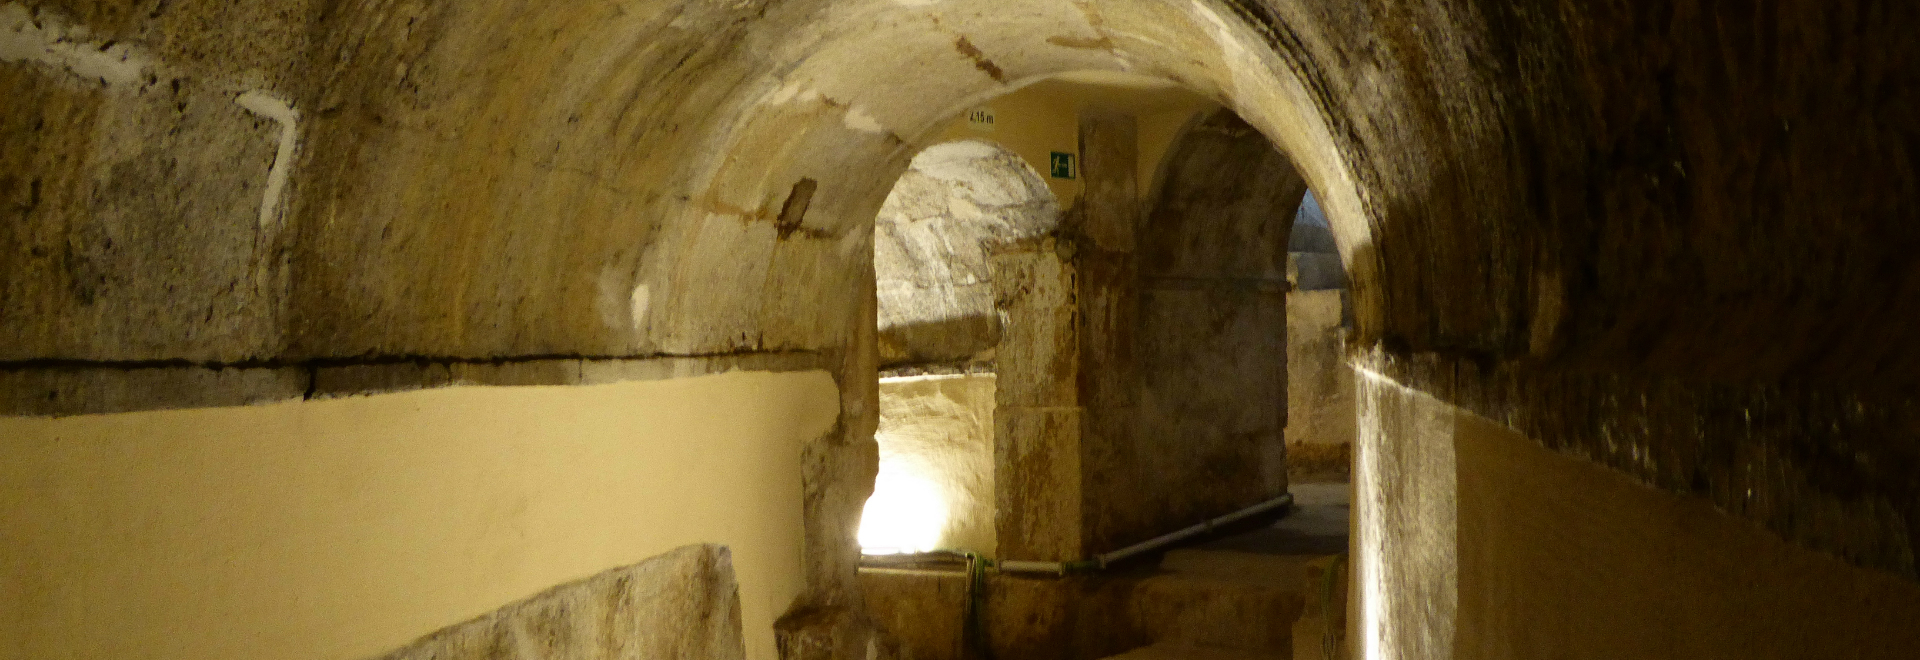 Le Réservoir Patriarcal, un trésor caché à Lisbonne 